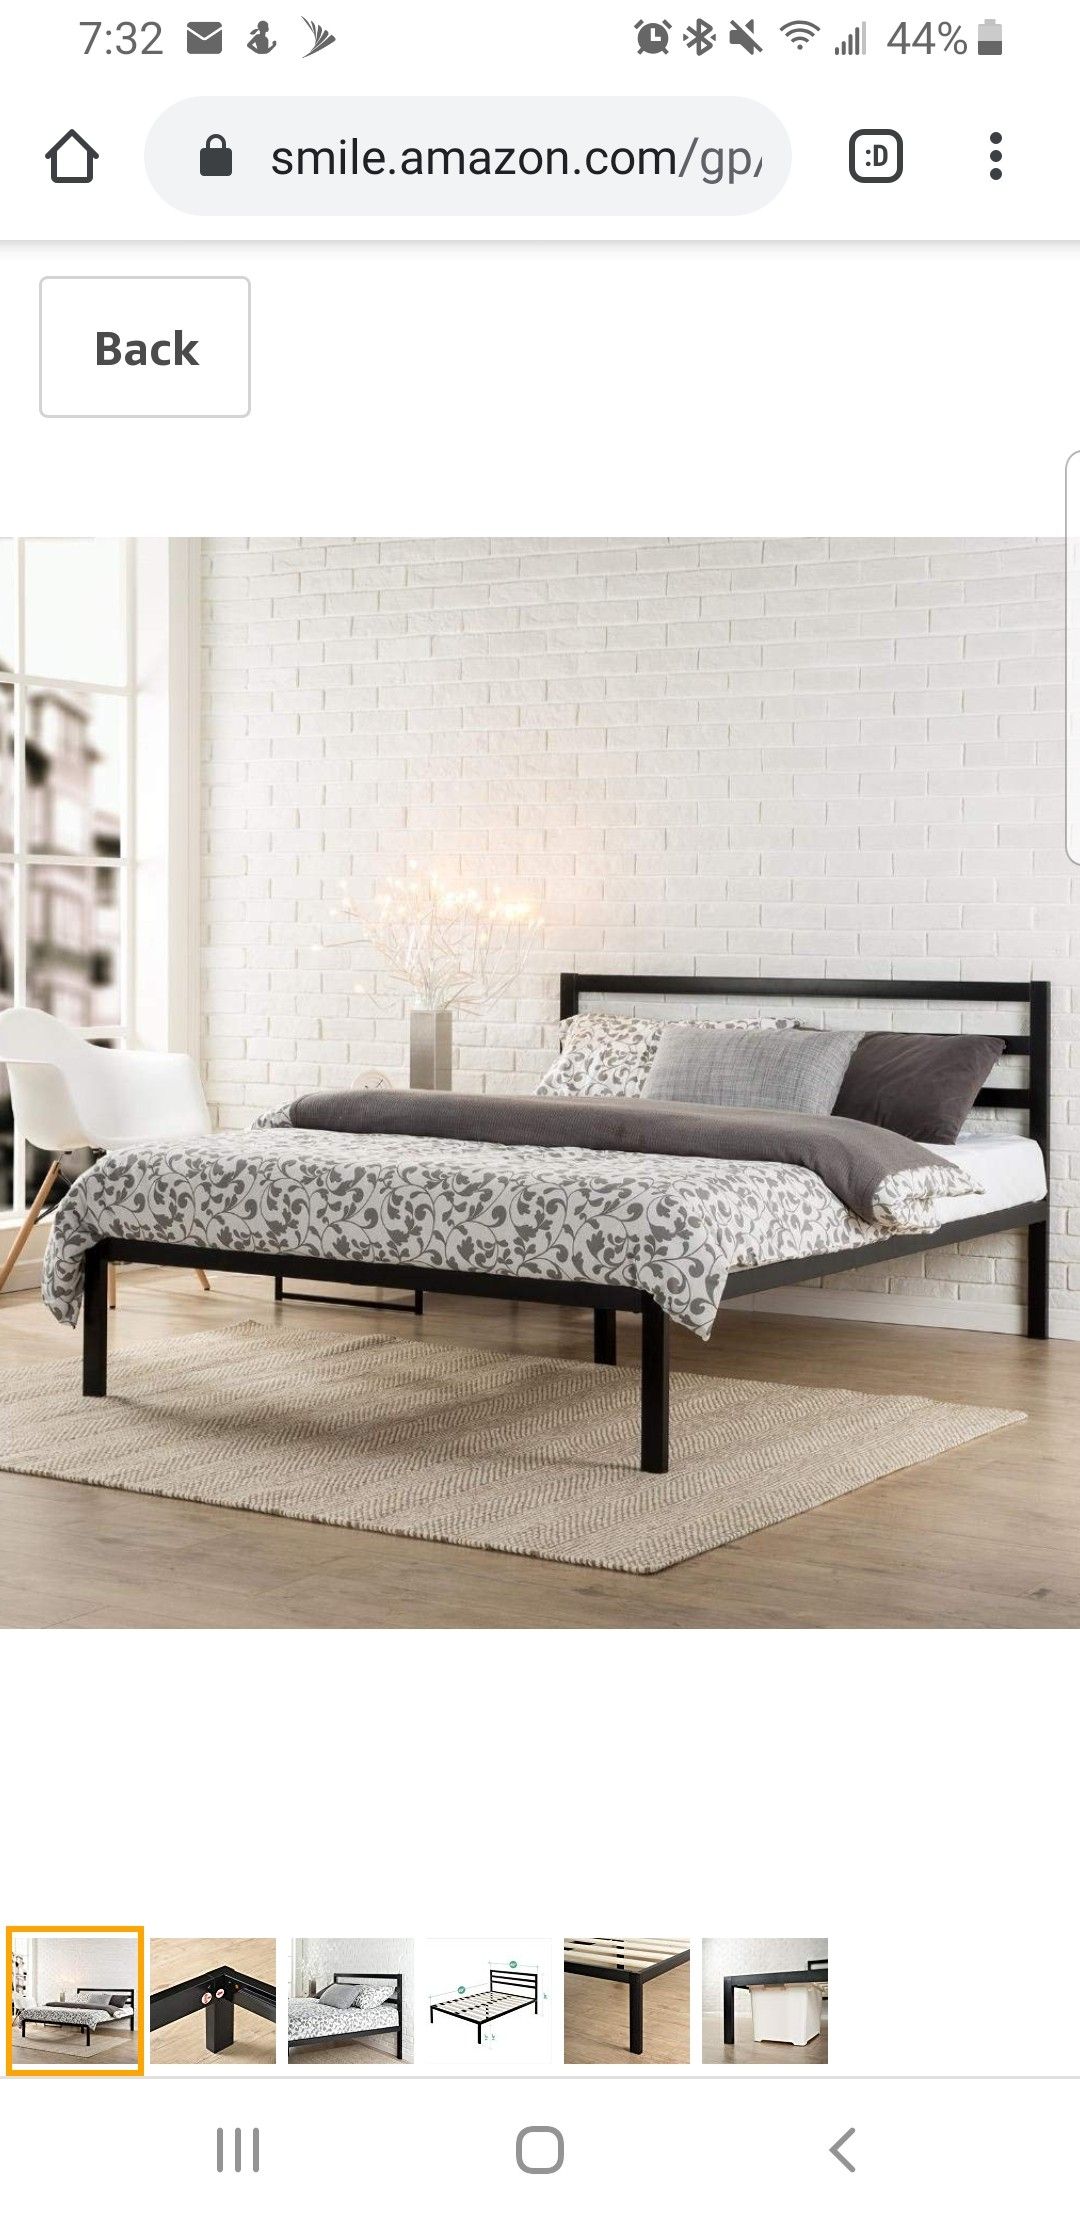 Modern Queen Bed Frame